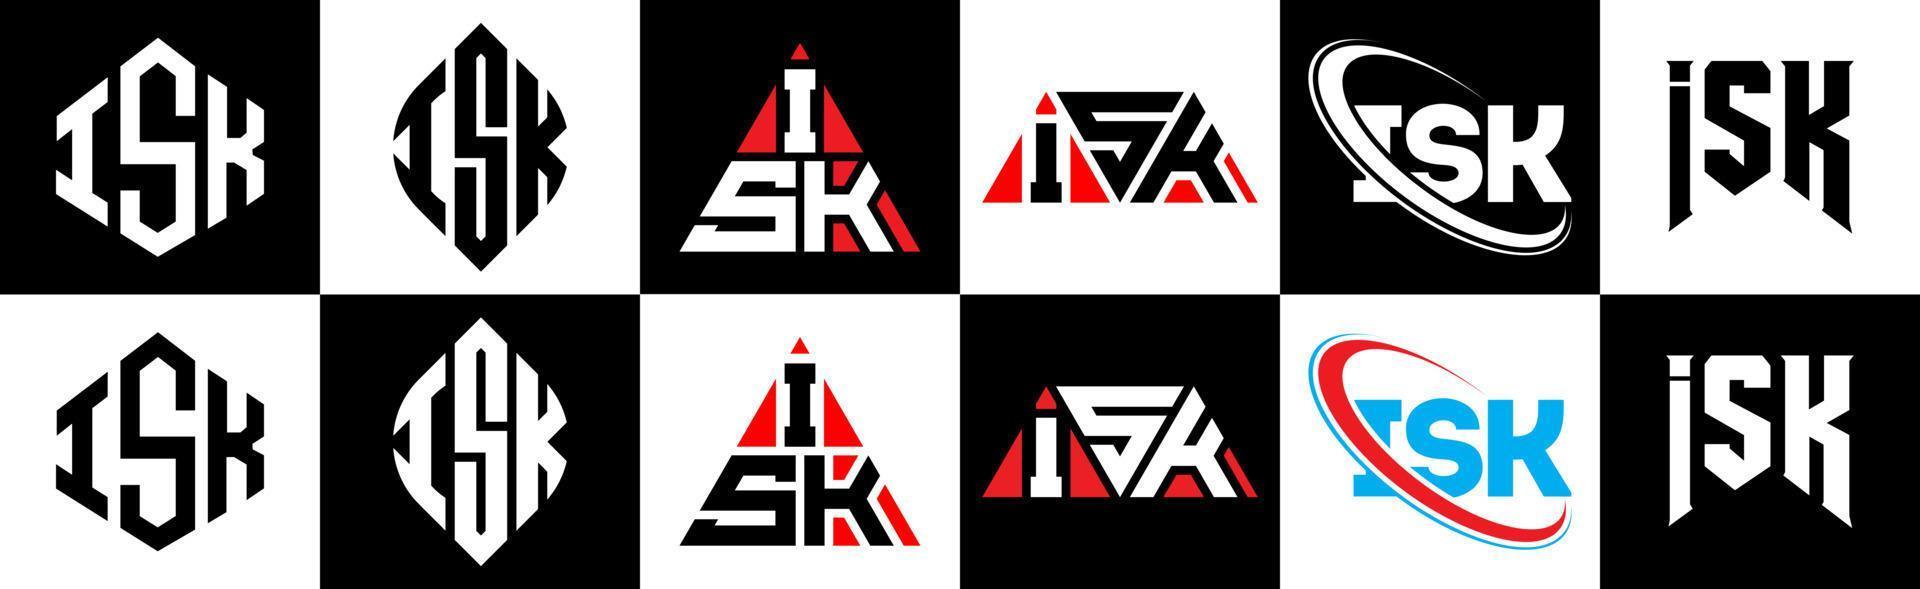 création de logo de lettre isk en six styles. isk polygone, cercle, triangle, hexagone, style plat et simple avec logo de lettre de variation de couleur noir et blanc dans un plan de travail. isk logo minimaliste et classique vecteur